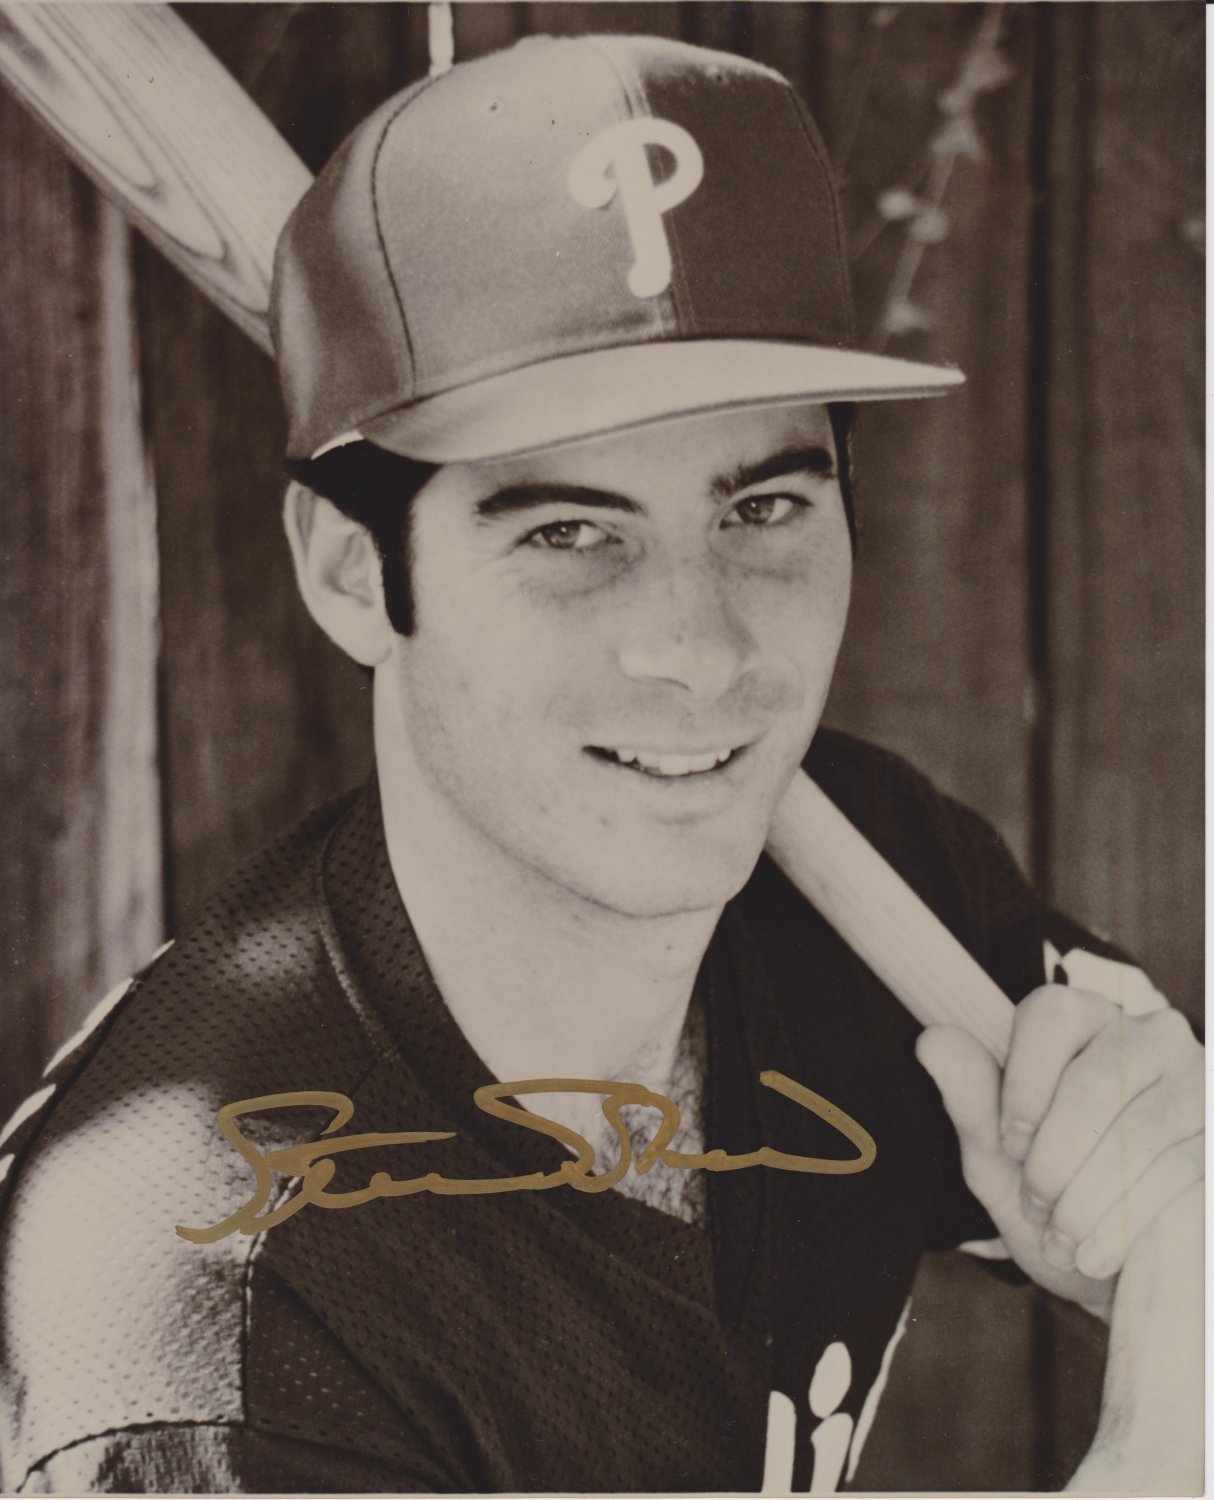 STEVE SOLOMON Autographed signed 8x10 Photo Picture REPRINT